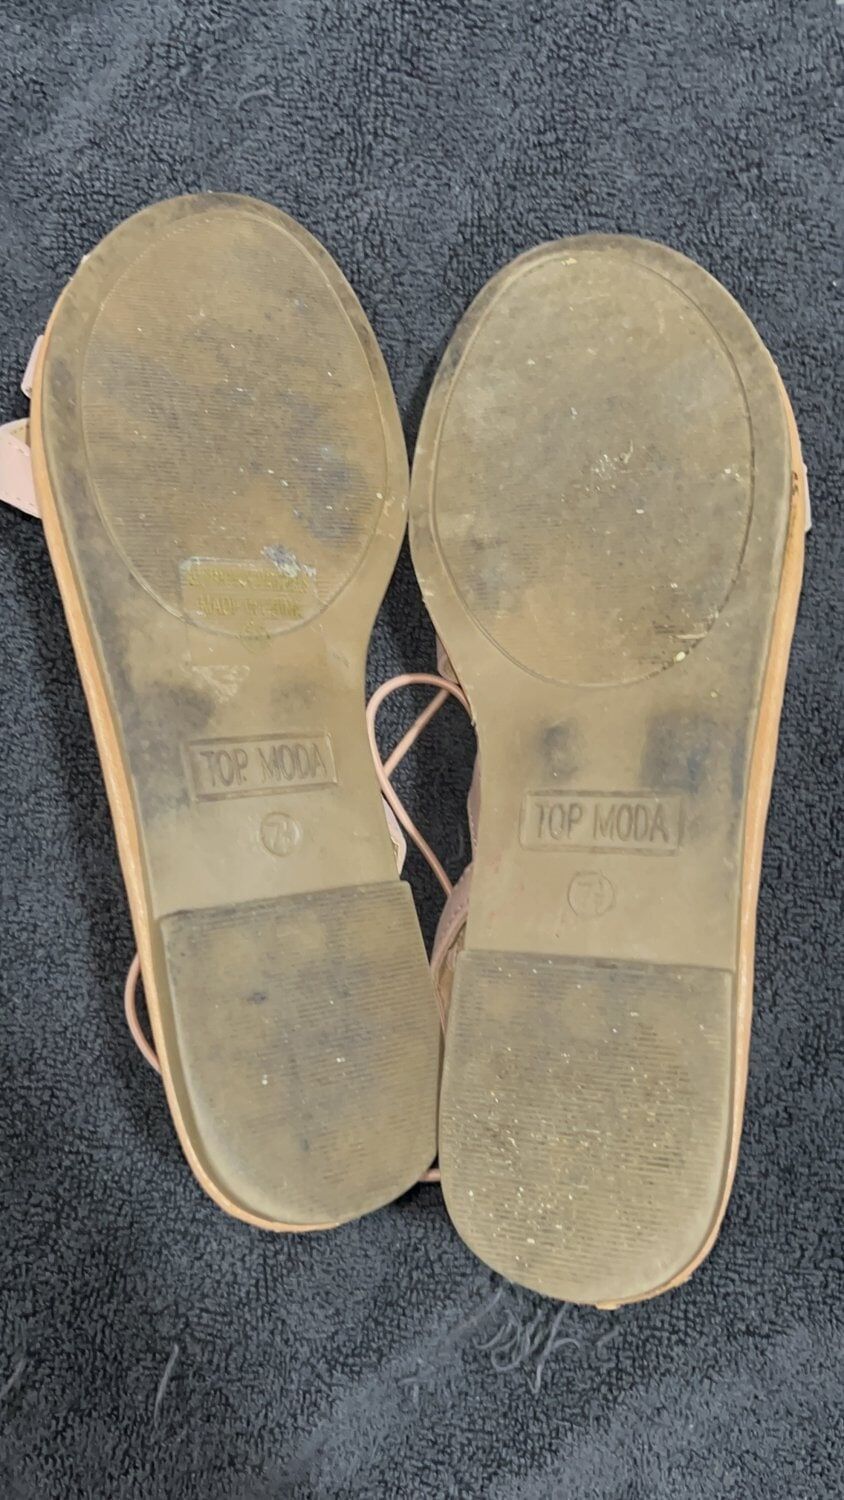 Cum on Used Sandals #2